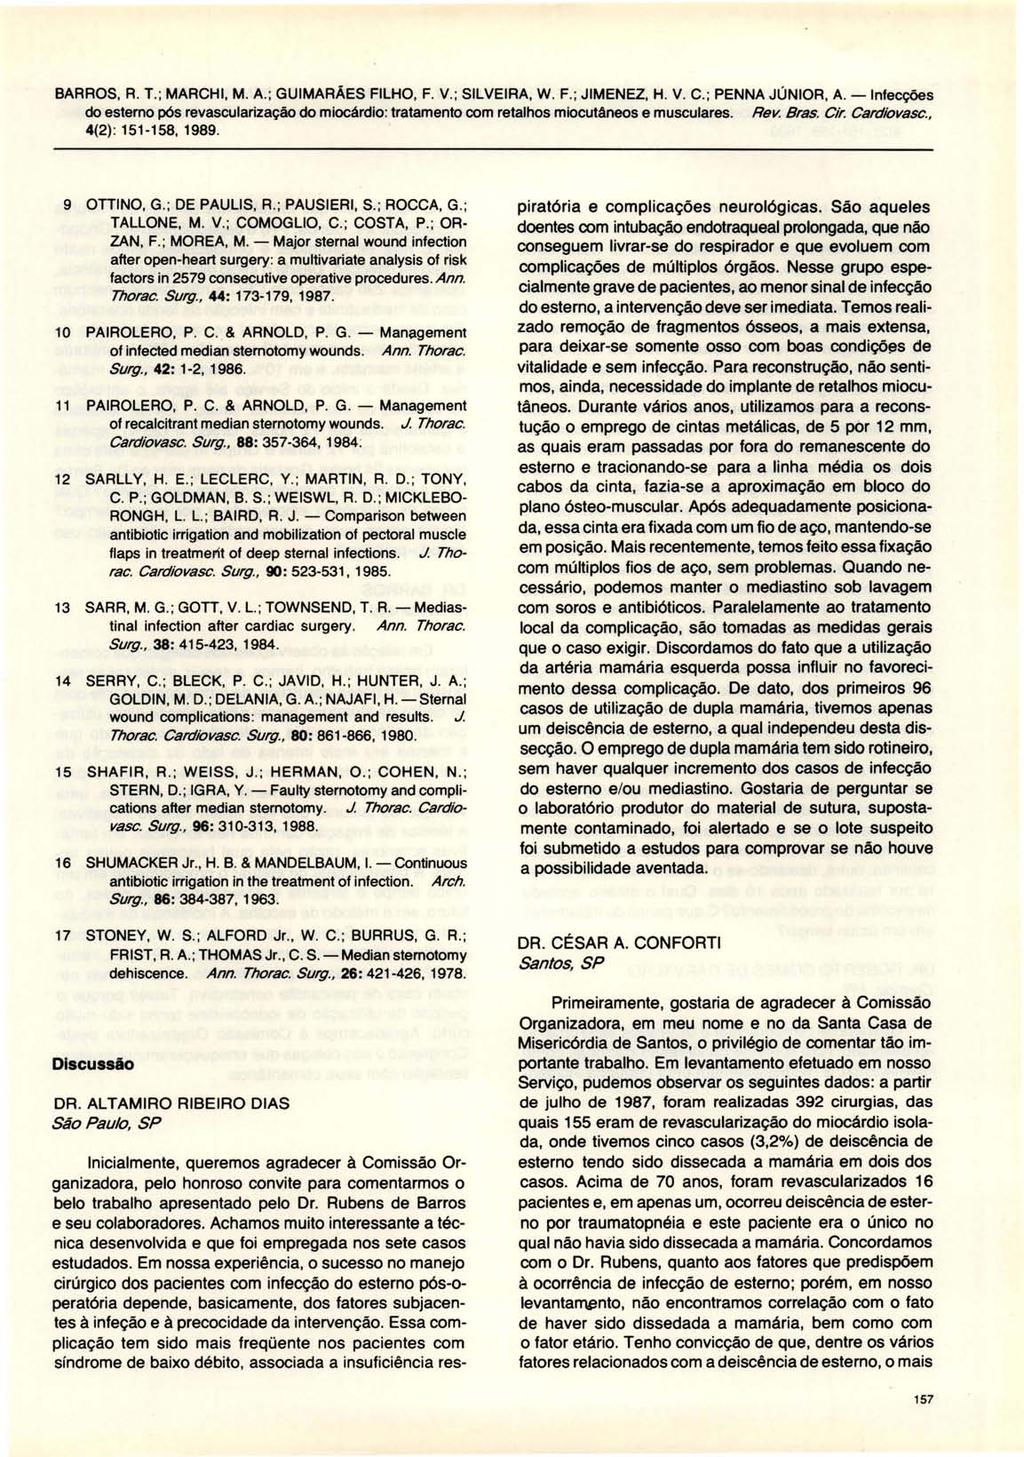 BARROS, R. T.; MARCHI, M. A. ; GUIMARÃES FILHO, F. V.; SILVEIRA, W. F.; JIMENEZ, H. V. C.; PENNA JÚNIOR, A. -Infecções 4(2) : 151-158, 1989. 9 OTTINO, G.; DE PAULlS, R. ; PAUSIERI, S.; ROCCA, G.